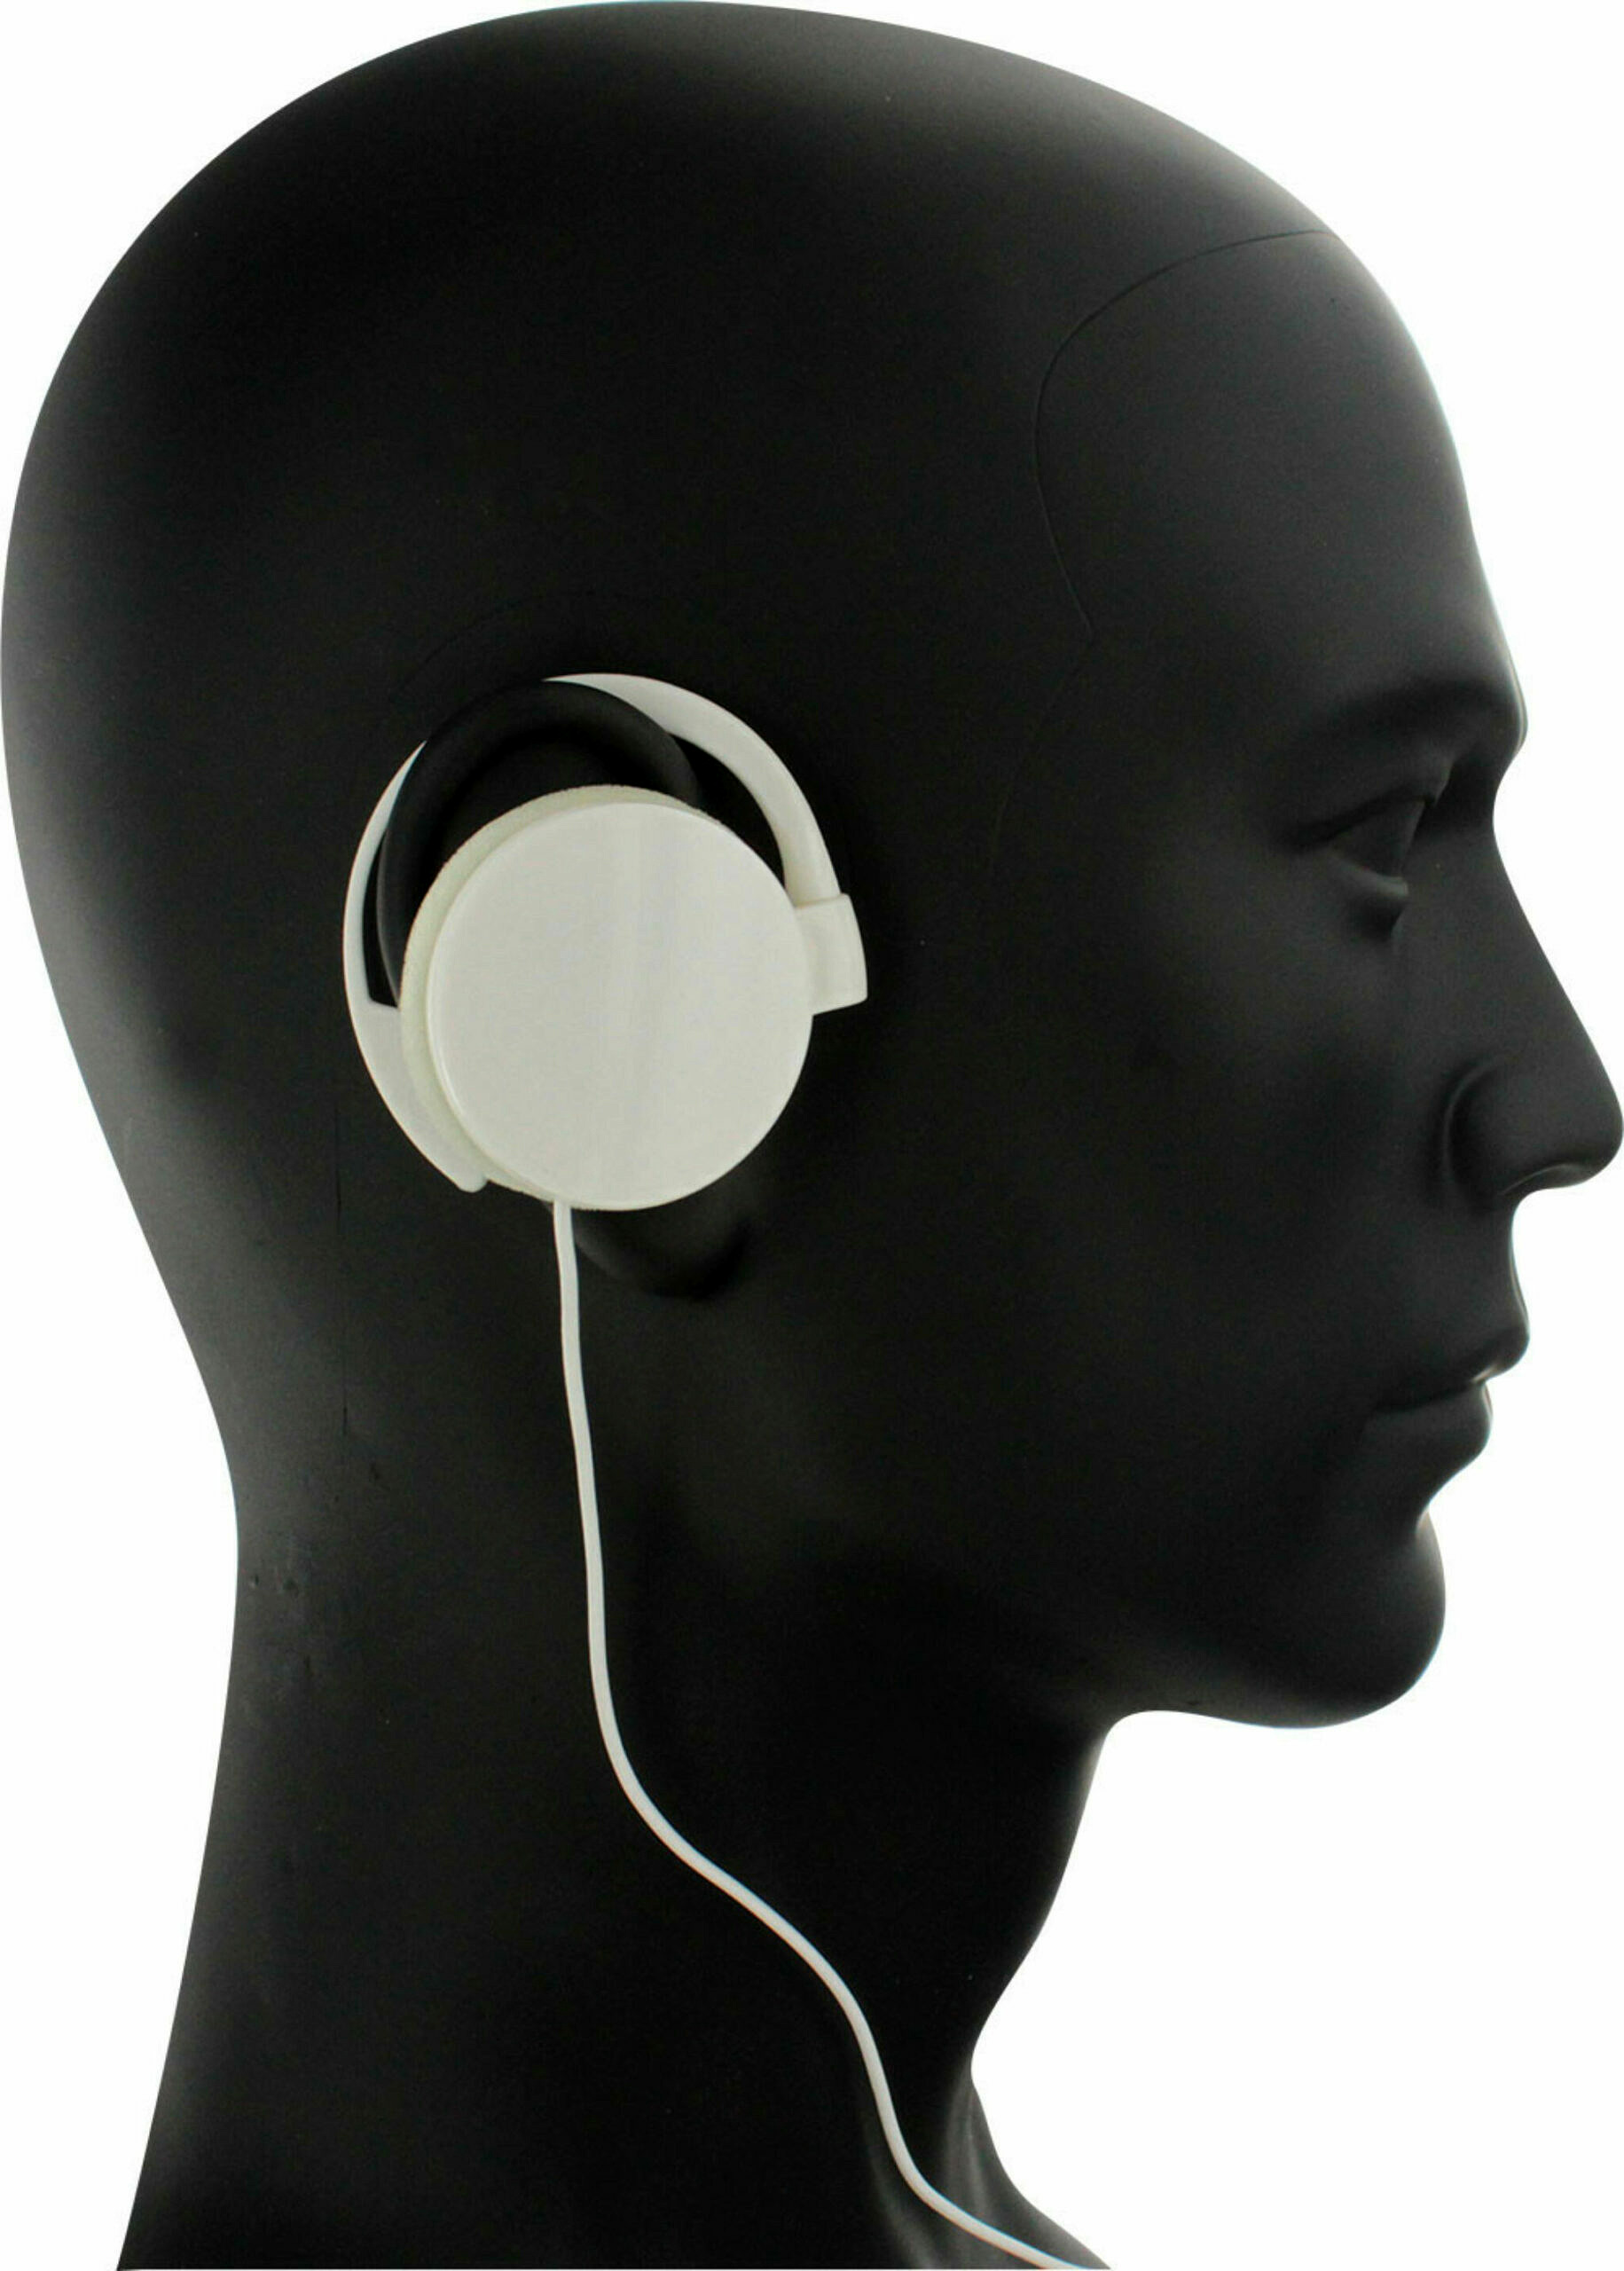 headphonesaddict Les 7 Meilleurs ecouteurs Non Intra auriculaires